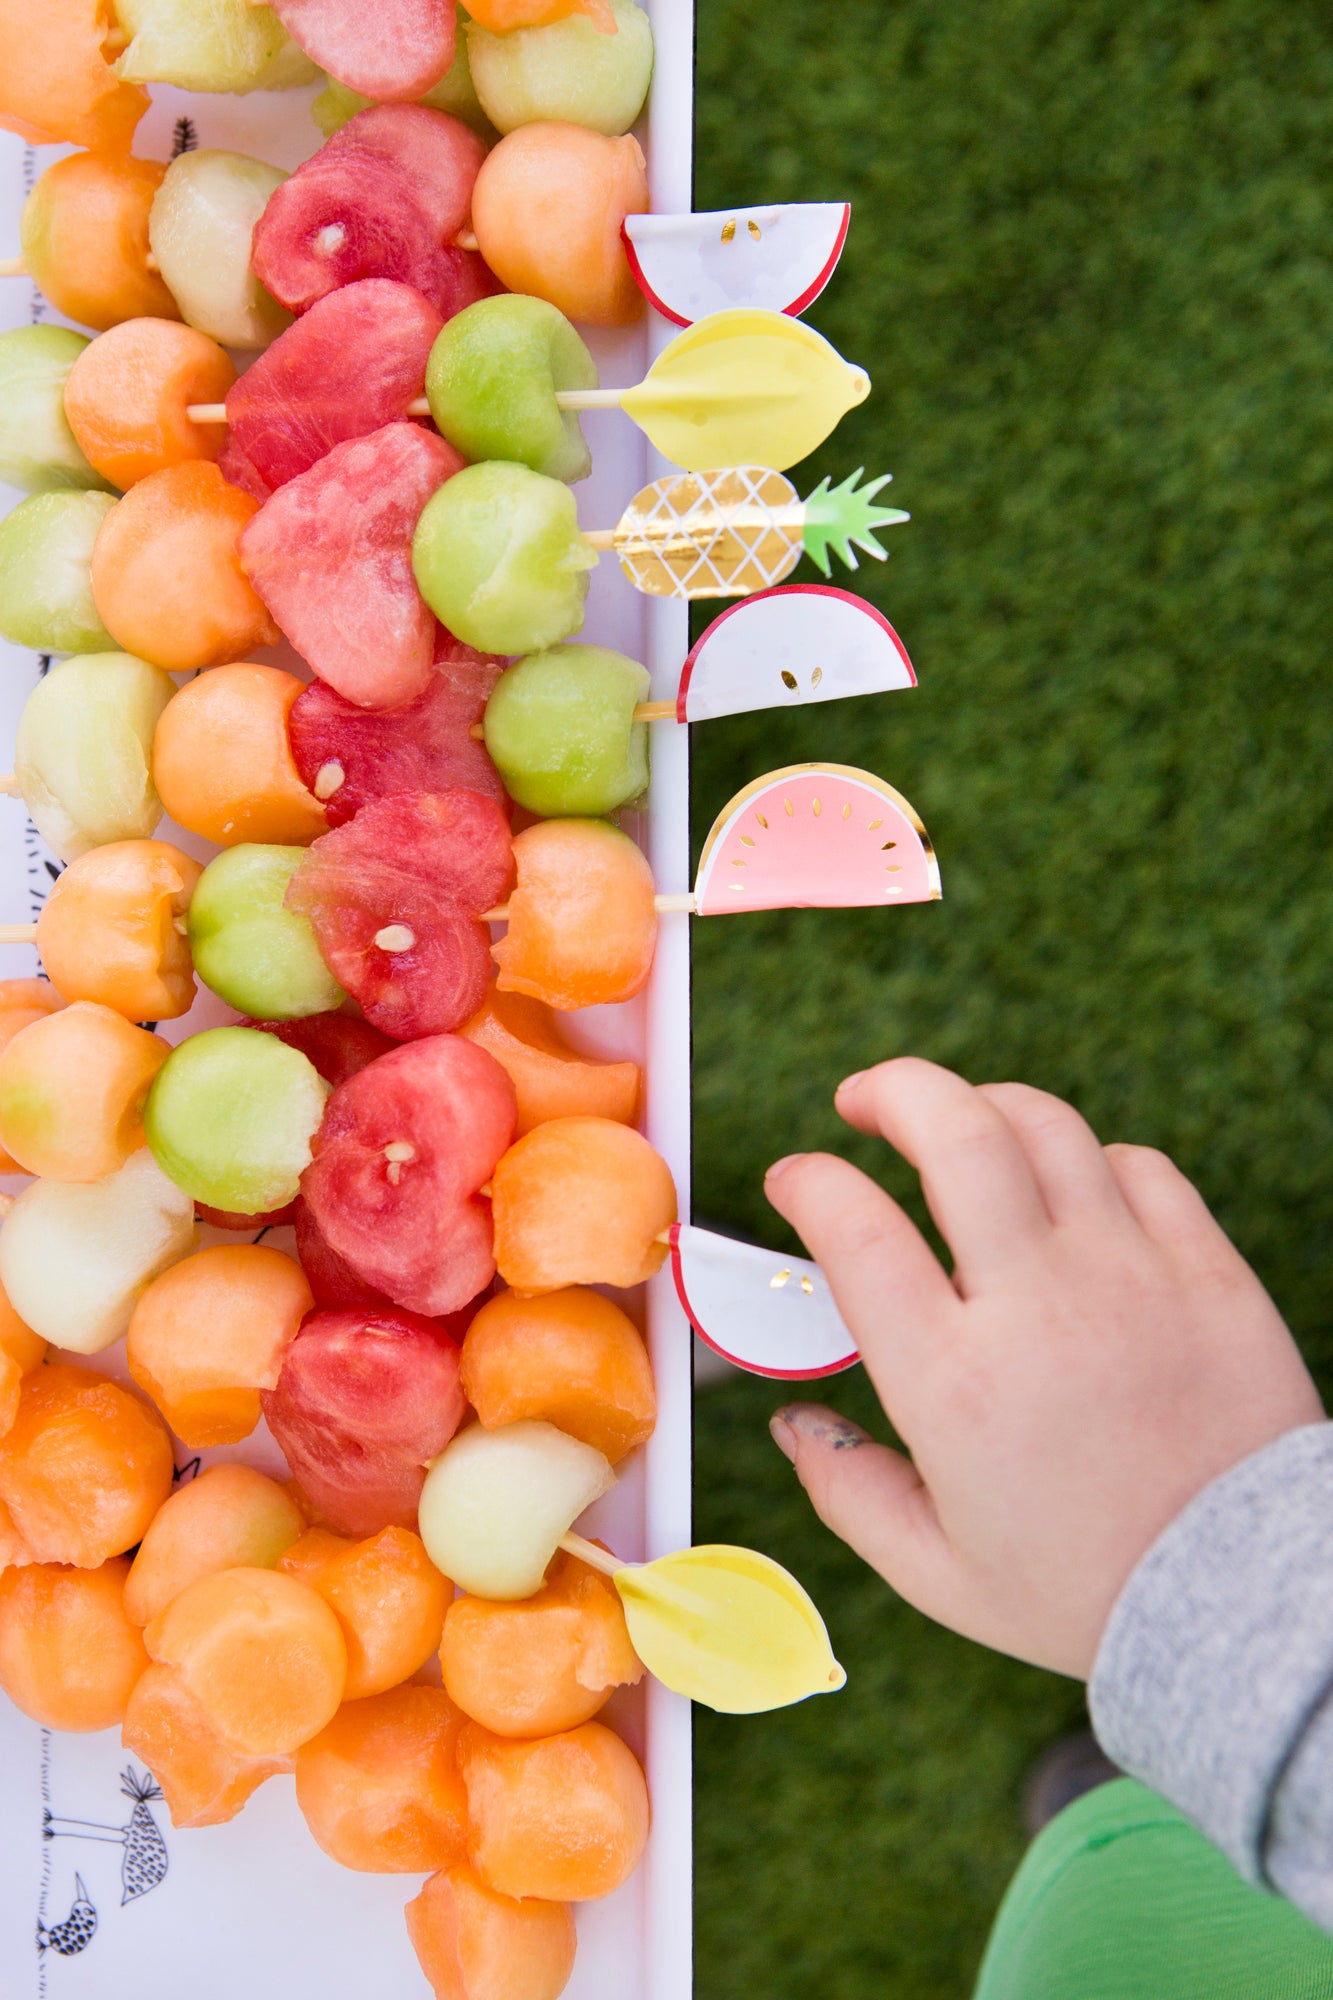 Rainbow party food ideas using fruit skewers.